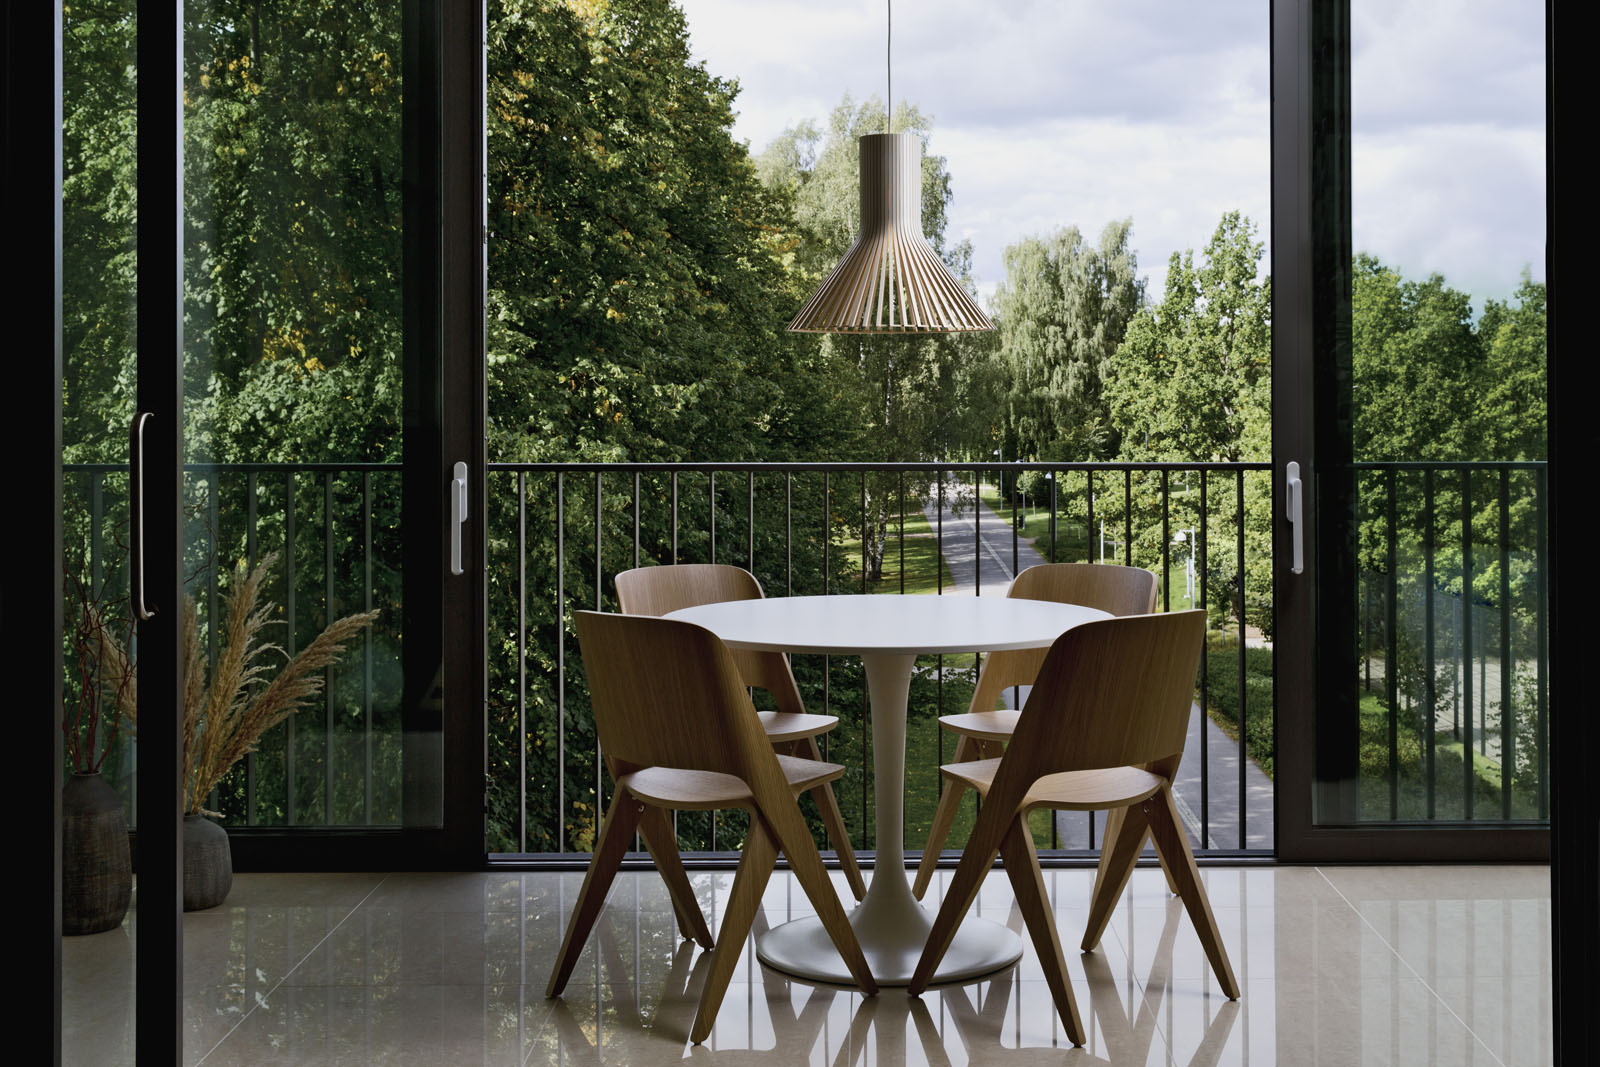 Ein runder Tisch mit vier Stühlen auf einem Balkon. Eine Puncto Pendelleuchte hängt darüber. Im Hindergrund sind Bäume.